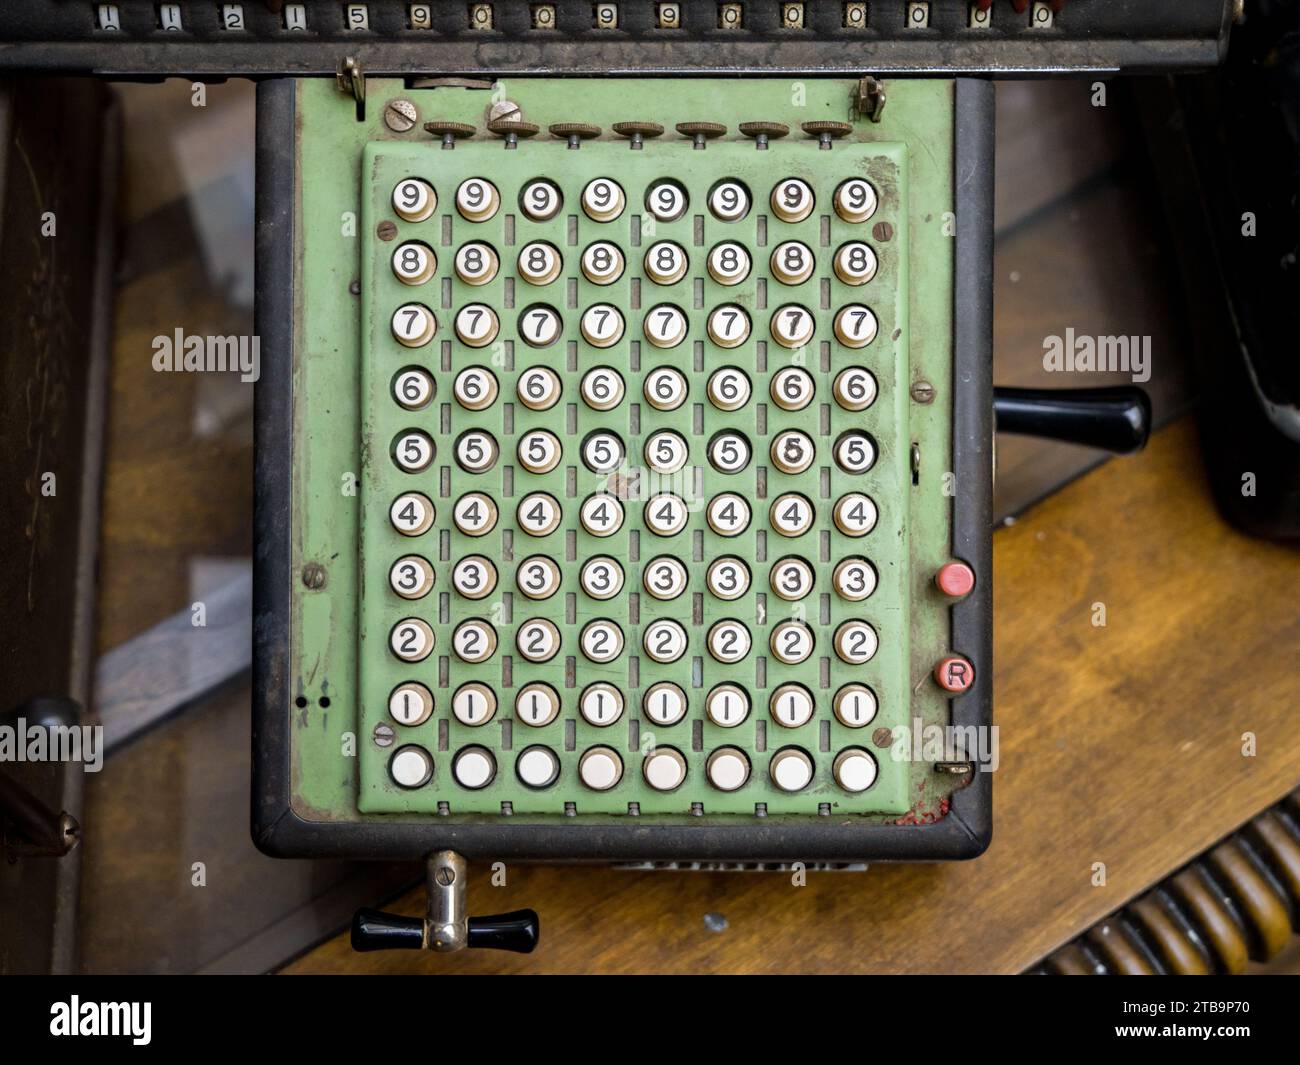 Diseño simple de las teclas numéricas en la calculadora mecánica antigua o máquina de contabilidad Foto de stock